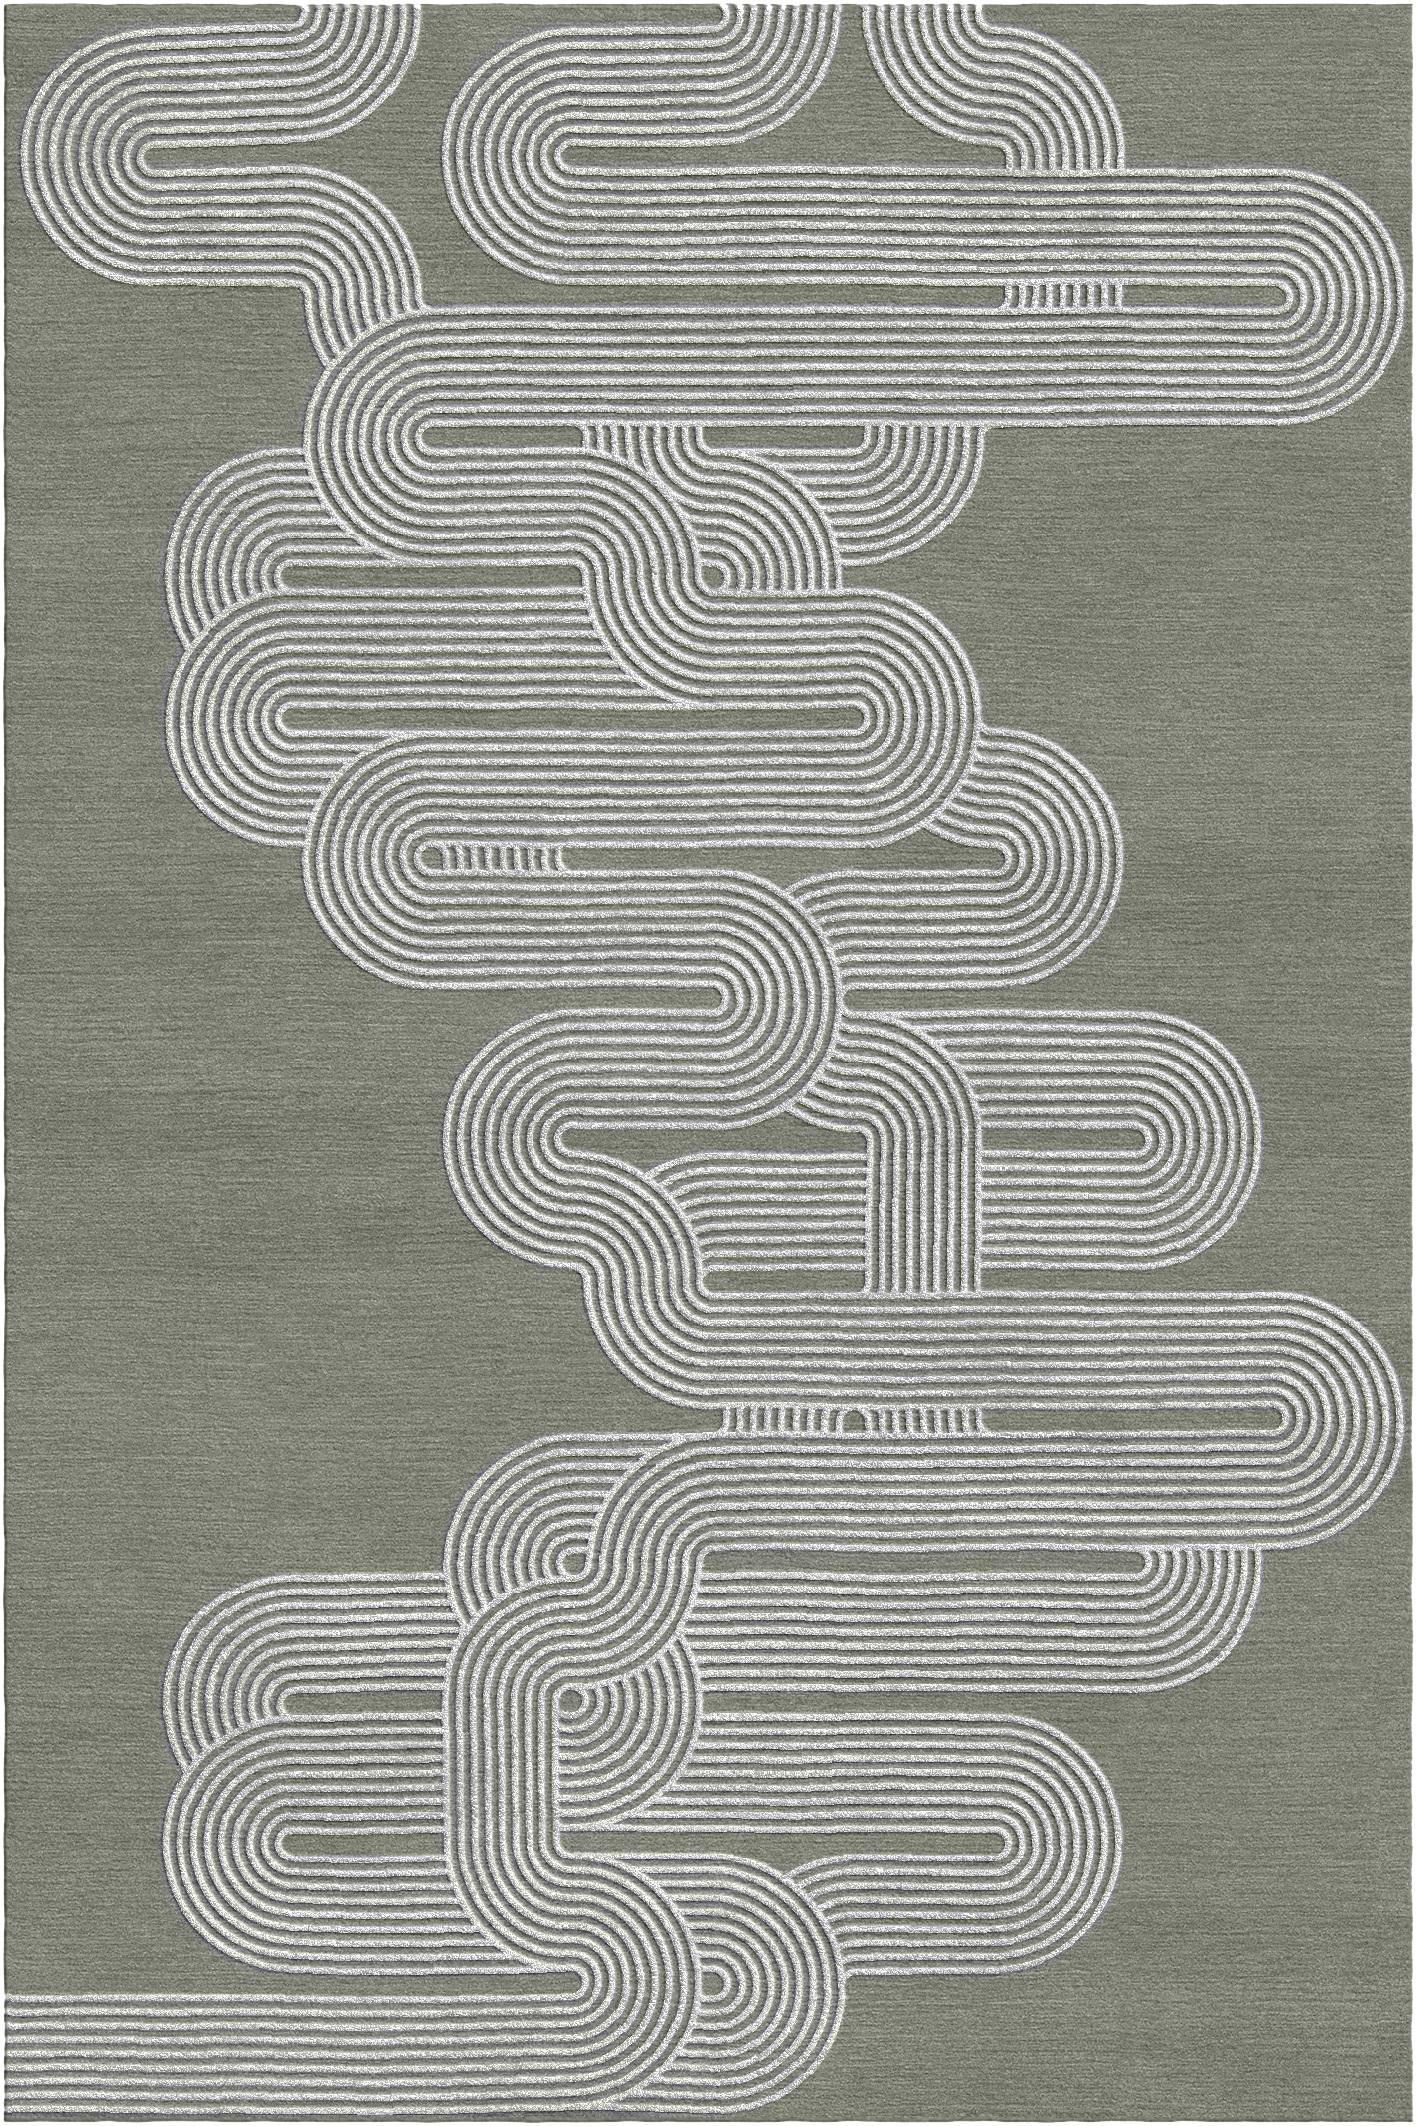 Kurventeppich III von Giulio Brambilla
Abmessungen: D 300 x B 200 x H 1,5 cm
MATERIALIEN: NZ-Wolle, Bambusseide
Erhältlich in anderen Farben.

Dieser Teppich des Künstlers und Architekten Giulio Brambilla ist ein auffälliges Design mit starker